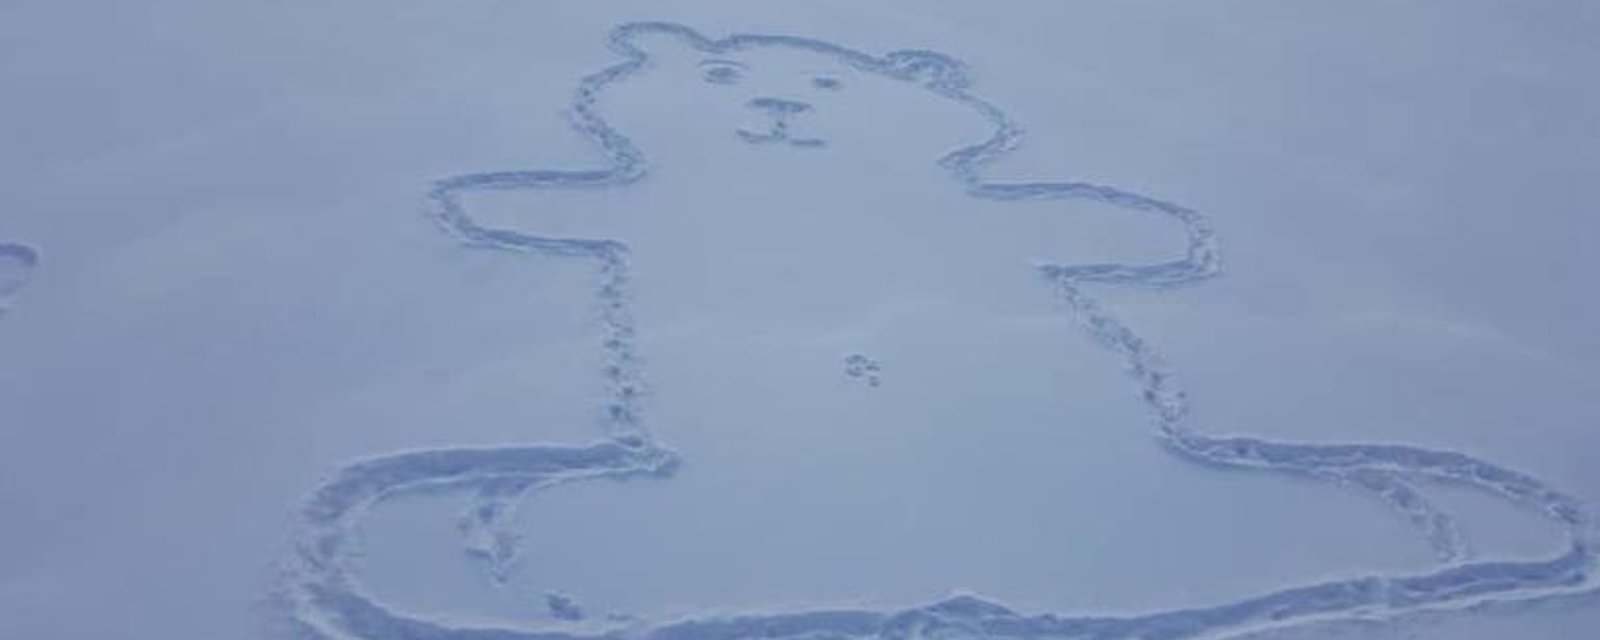 On a finalement résolu le mystère de l'ours de neige et de son nombril